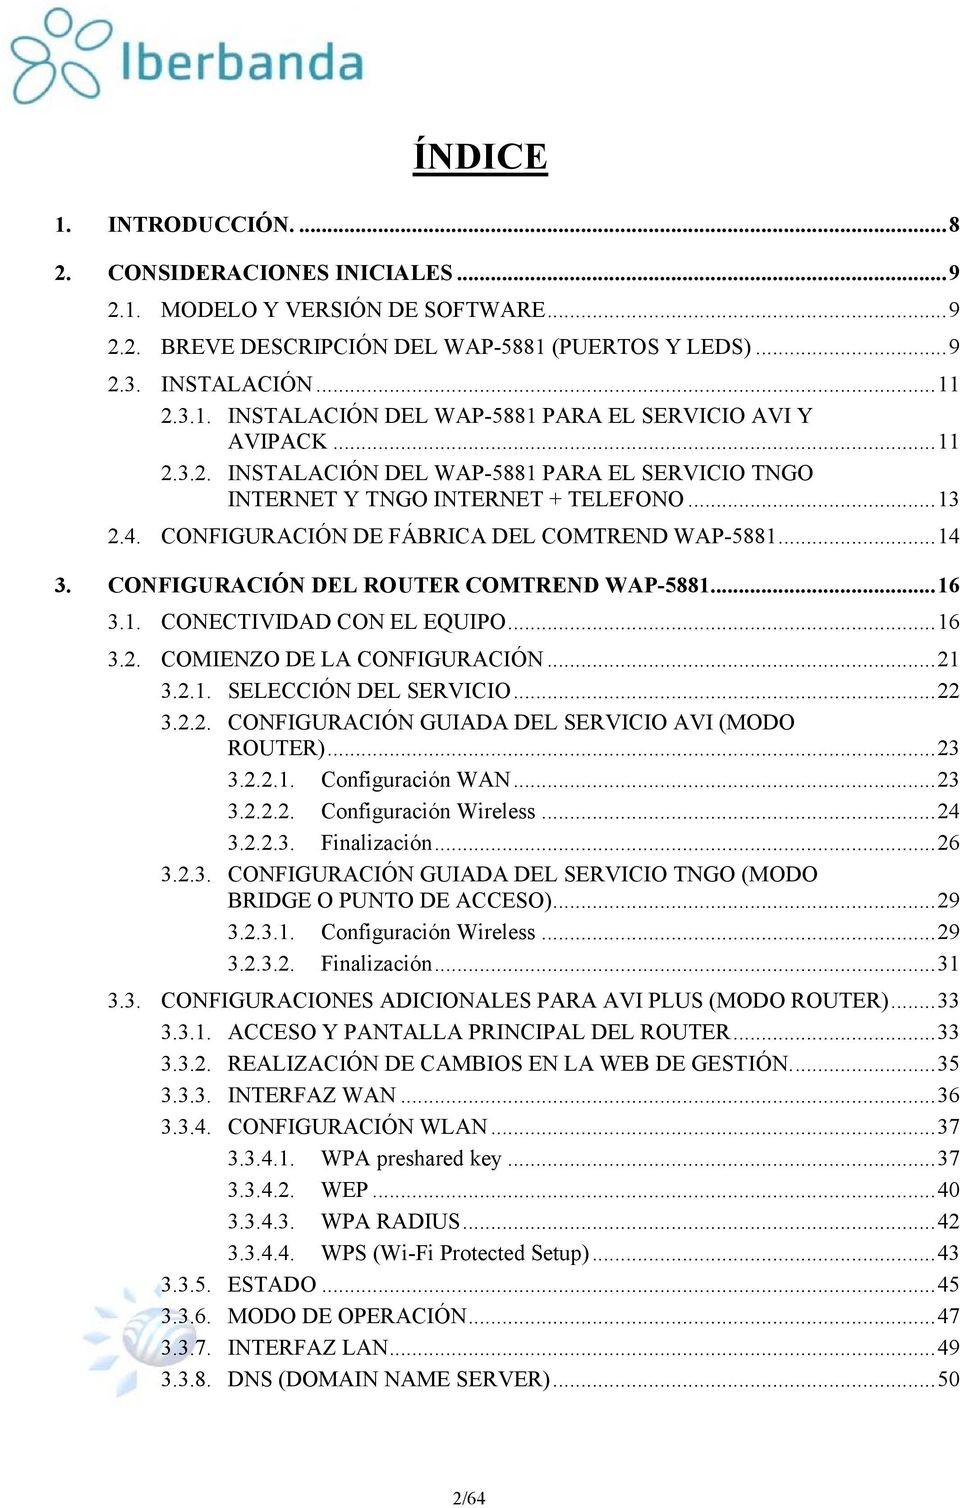 CONFIGURACIÓN DEL ROUTER COMTREND WAP-5881... 16 3.1. CONECTIVIDAD CON EL EQUIPO... 16 3.2. COMIENZO DE LA CONFIGURACIÓN... 21 3.2.1. SELECCIÓN DEL SERVICIO... 22 3.2.2. CONFIGURACIÓN GUIADA DEL SERVICIO AVI (MODO ROUTER).